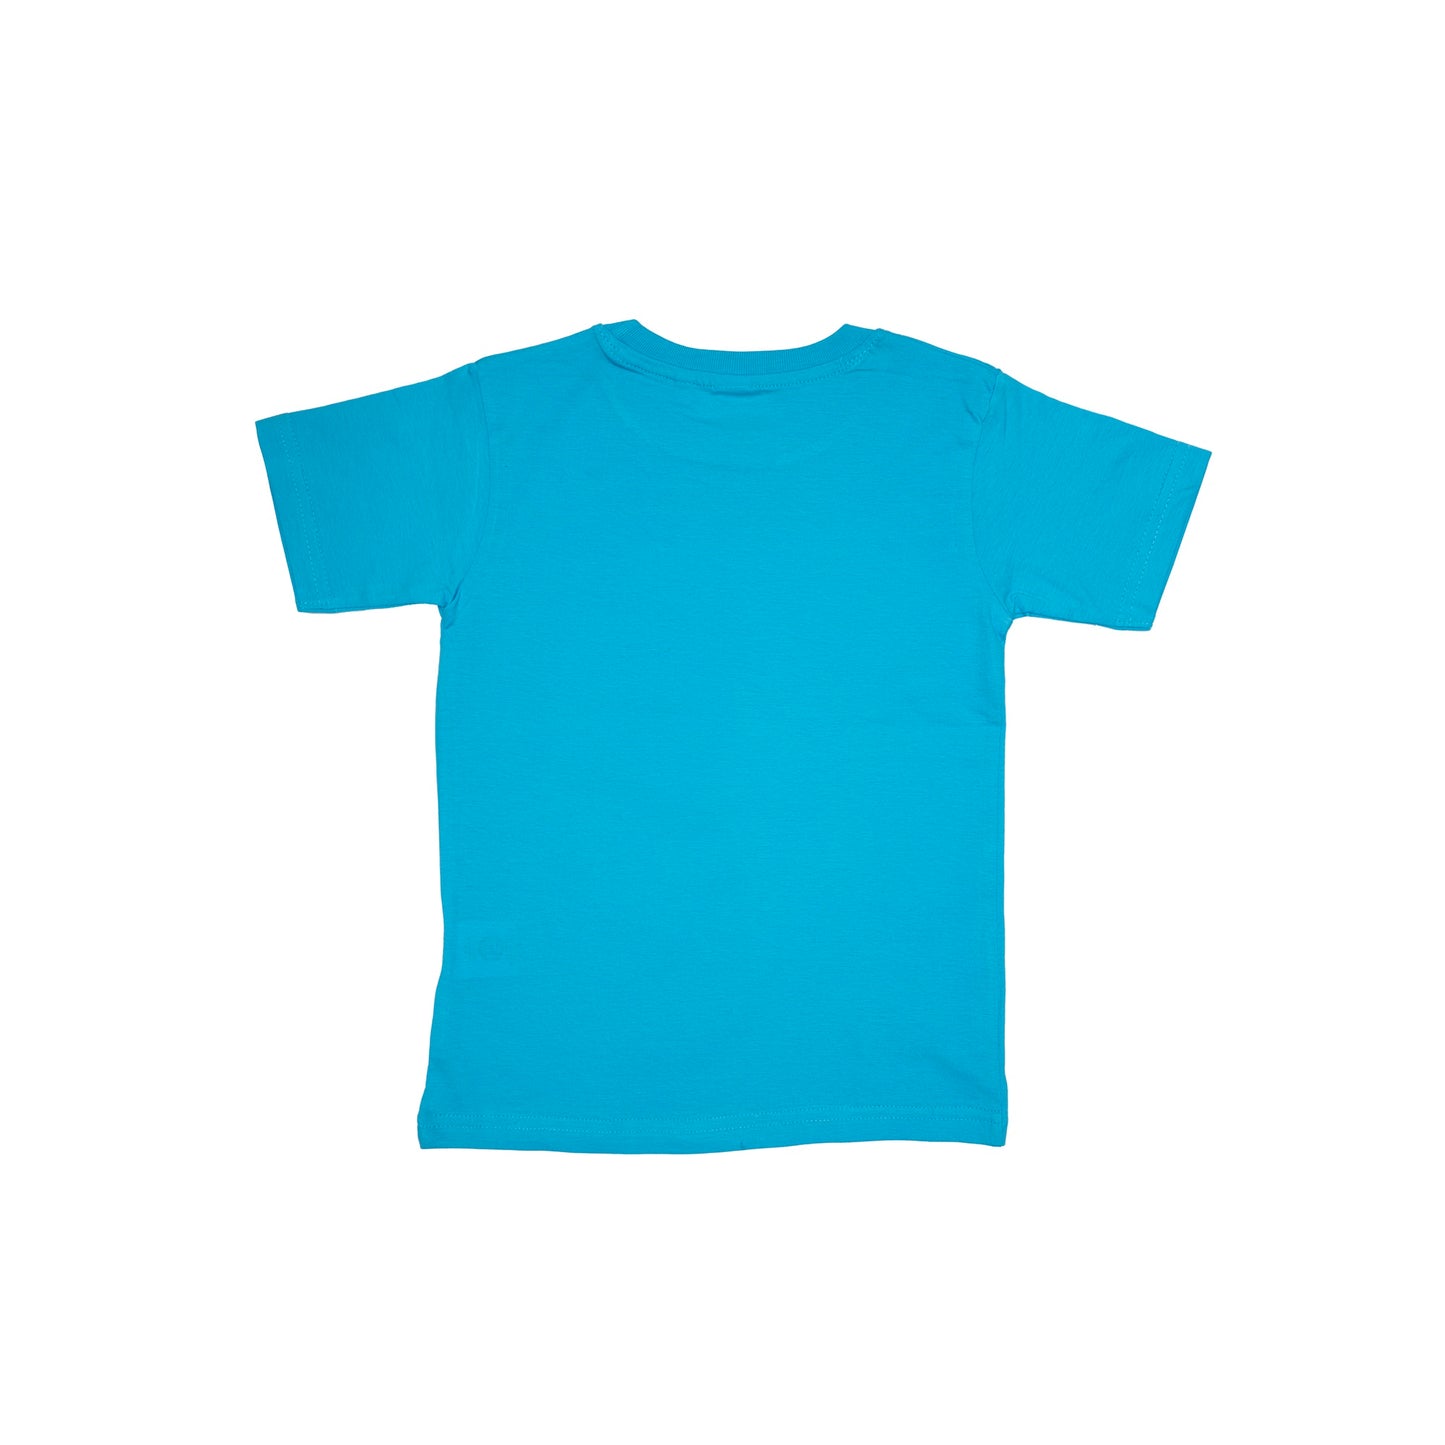 Unicorn_Embrace your Uniqueness T-shirt (Sky Blue)